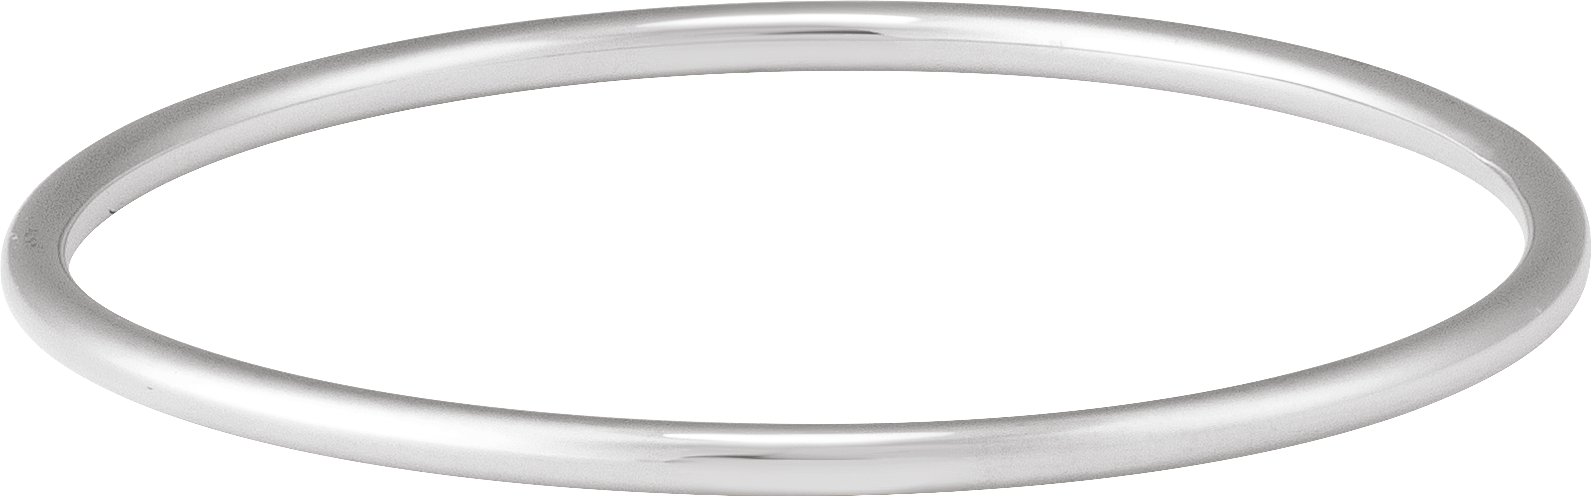 Sterling Silver 3 mm Bangle 7 3/4" Bracelet